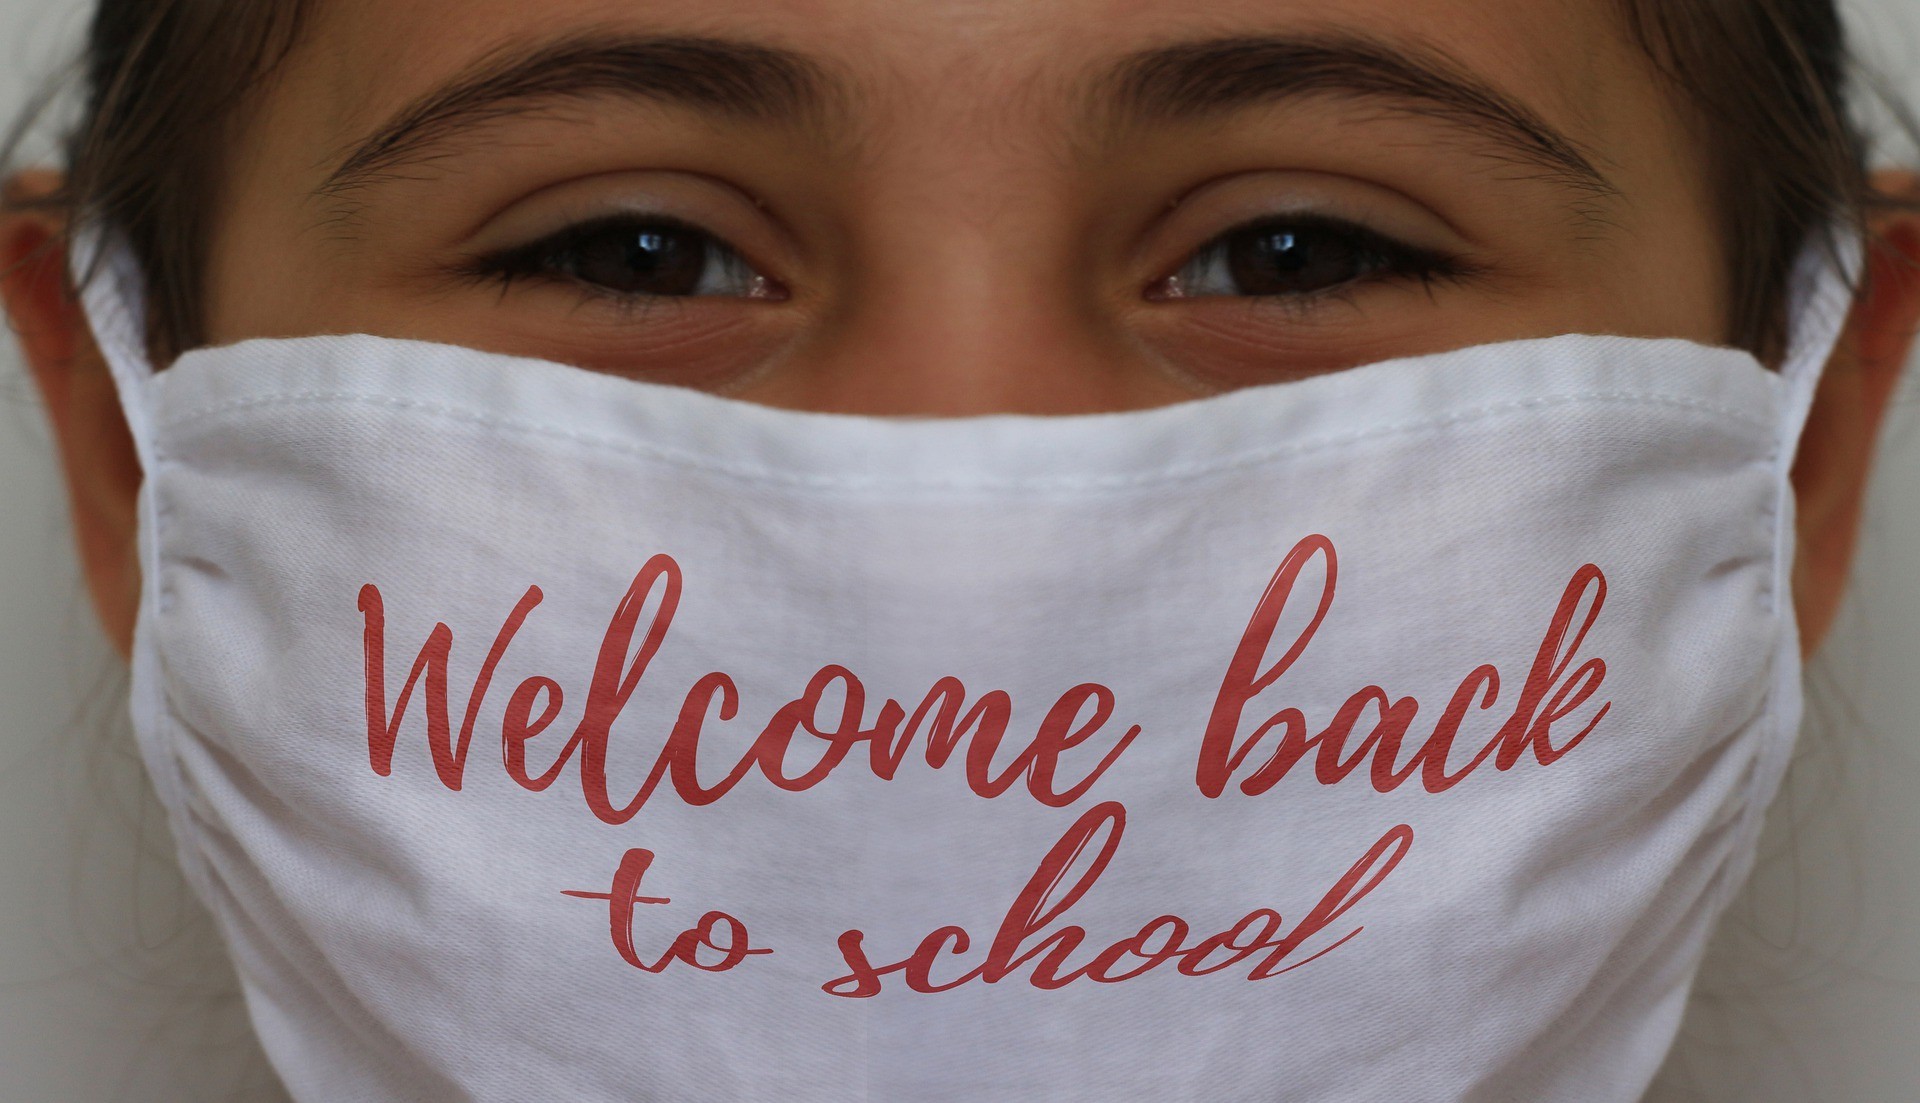 A scuola con la mascherina. 3 sistemi psicologia per aiutare tuo figlio a settembre